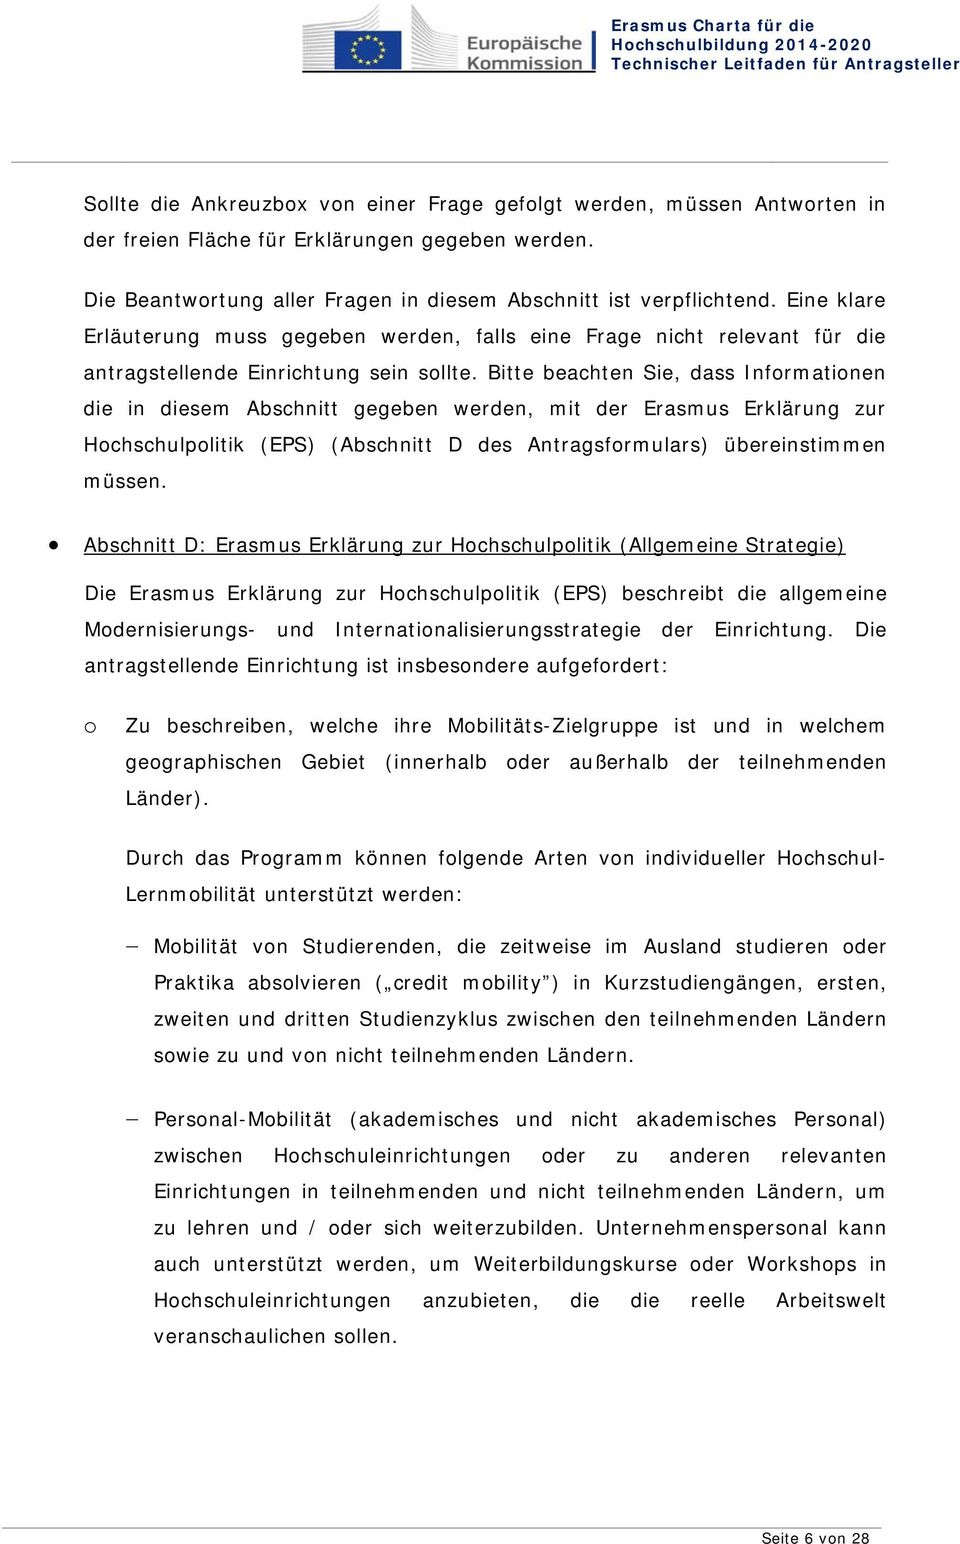 Bitte beachten Sie, dass Informationen die in diesem Abschnitt gegeben werden, mit der Erasmus Erklärung zur Hochschulpolitik (EPS) (Abschnitt D des Antragsformulars) übereinstimmen müssen.